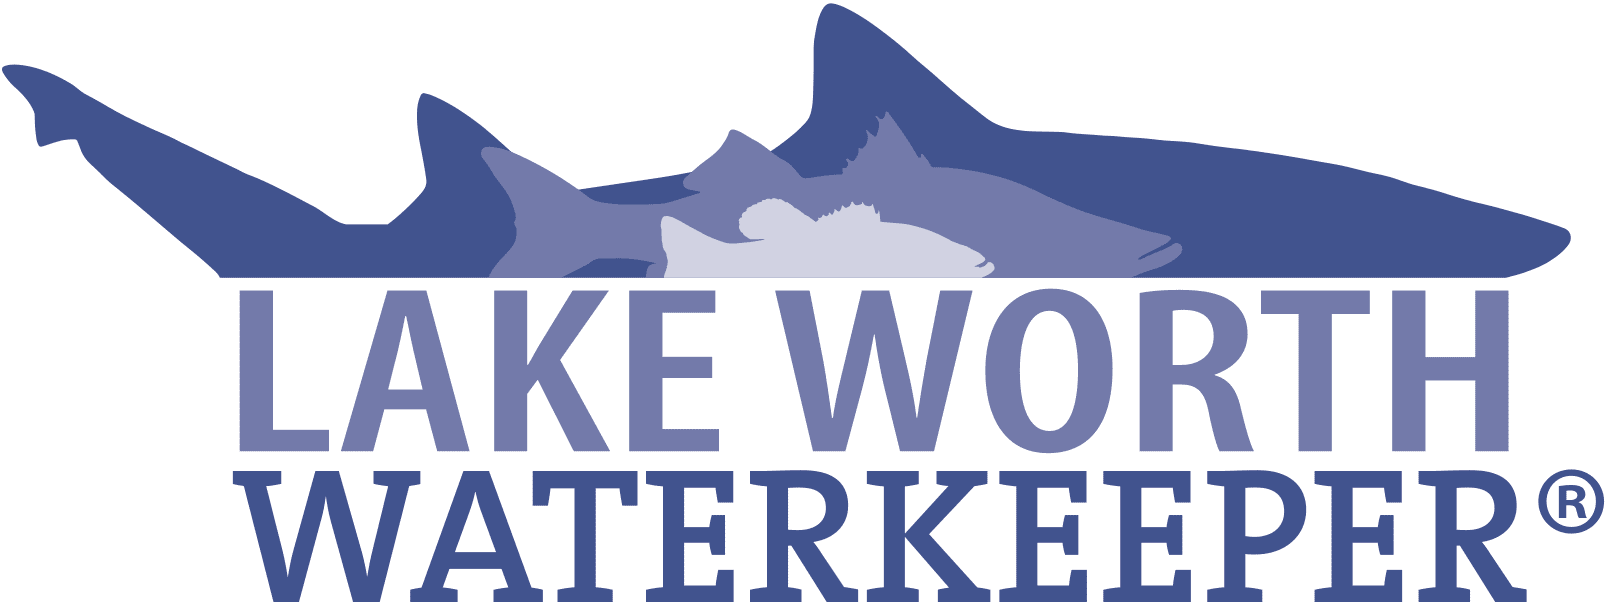 Lake Worth Waterkeeper logo